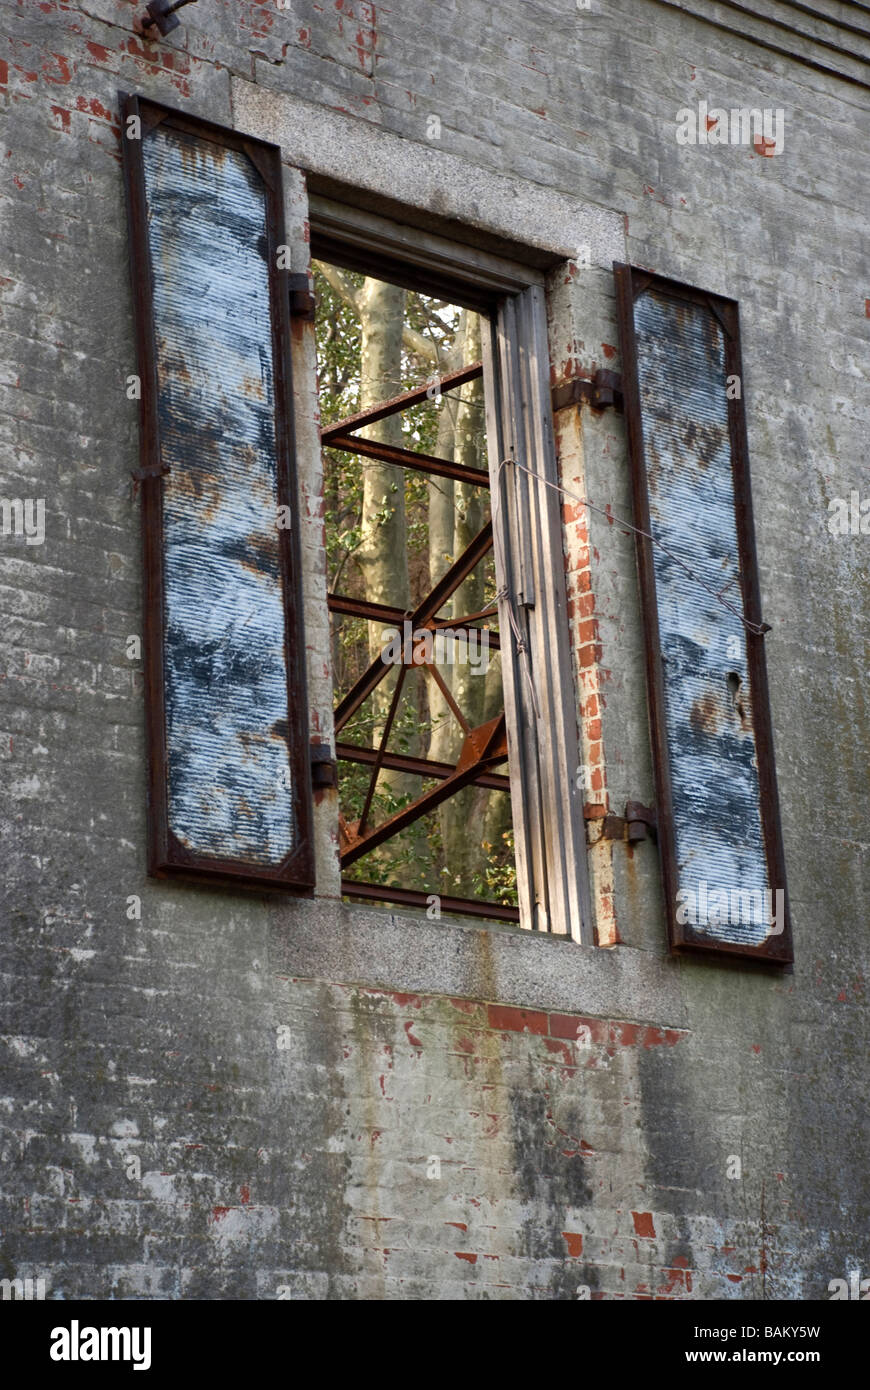 Rost rostig Eisen Stahl Fensterläden Ziegel Wand antike Ruine bauen alte vertikale verlassenen leer frei öffnen durch Verschluss-Ansicht Stockfoto